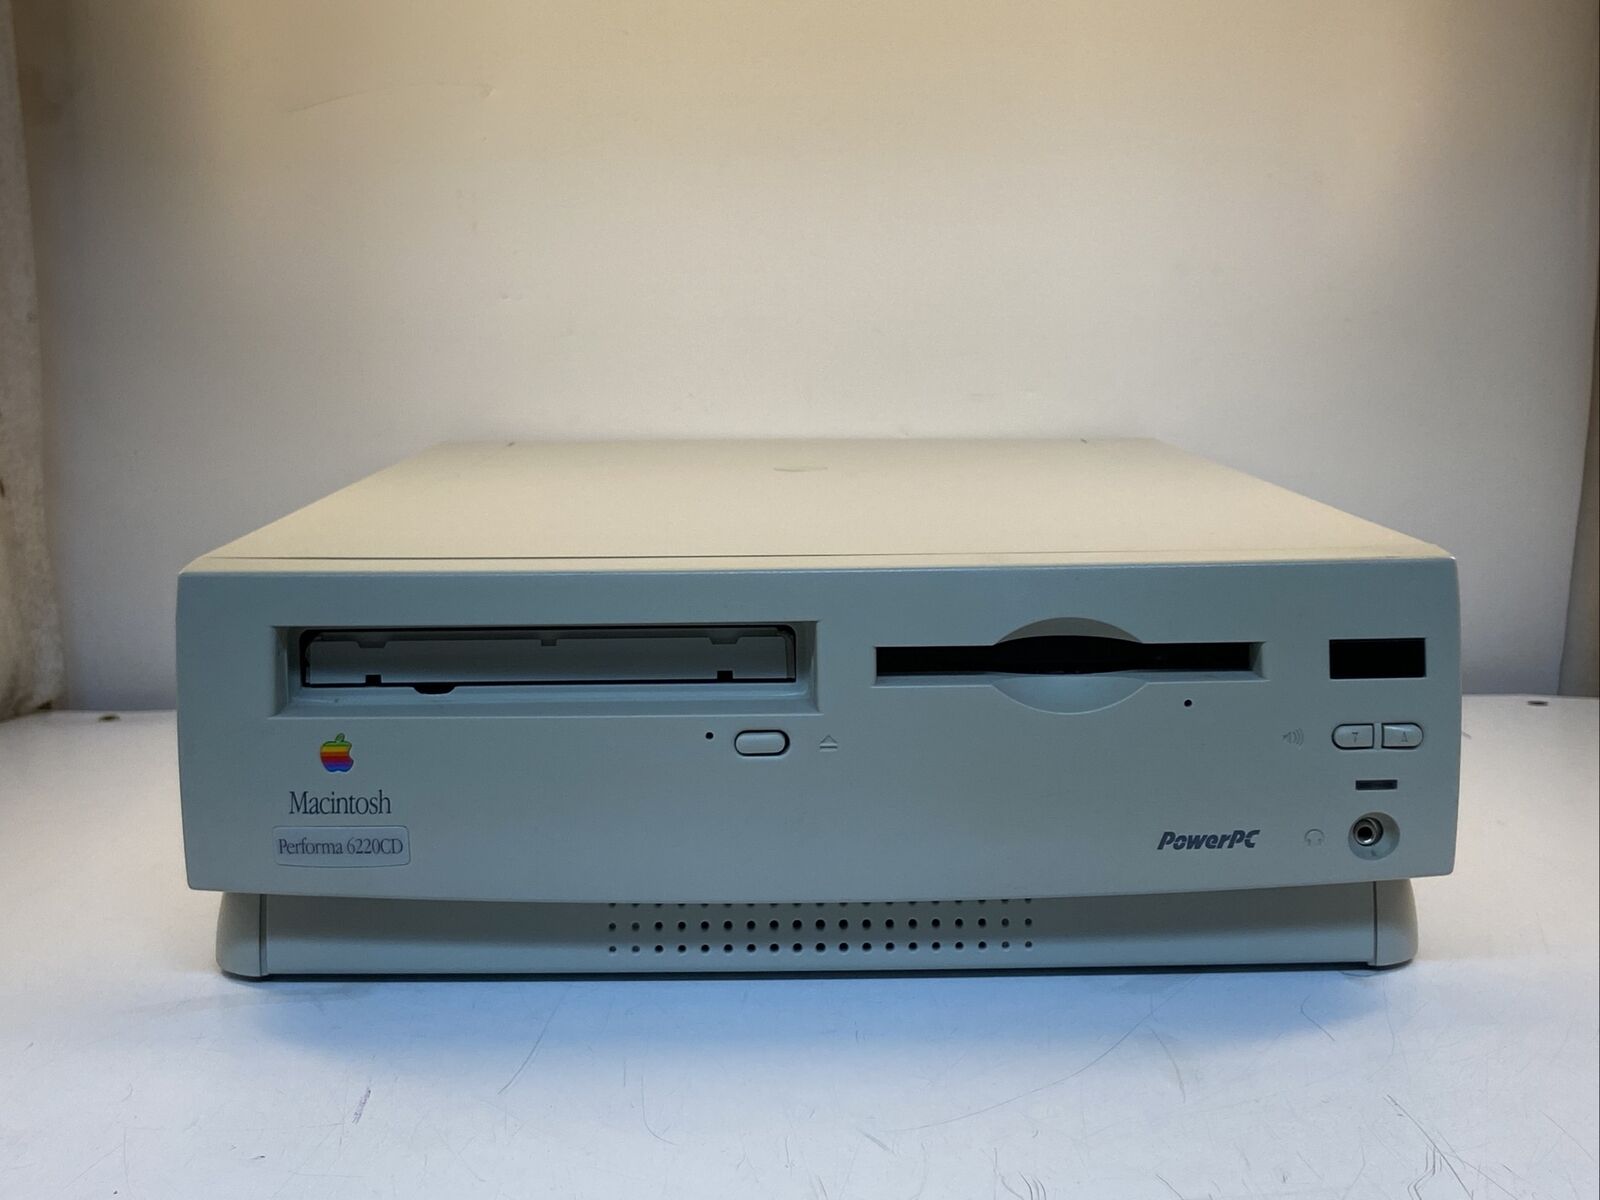 Vintage Apple Macintosh Performa 6220CD Model M3076